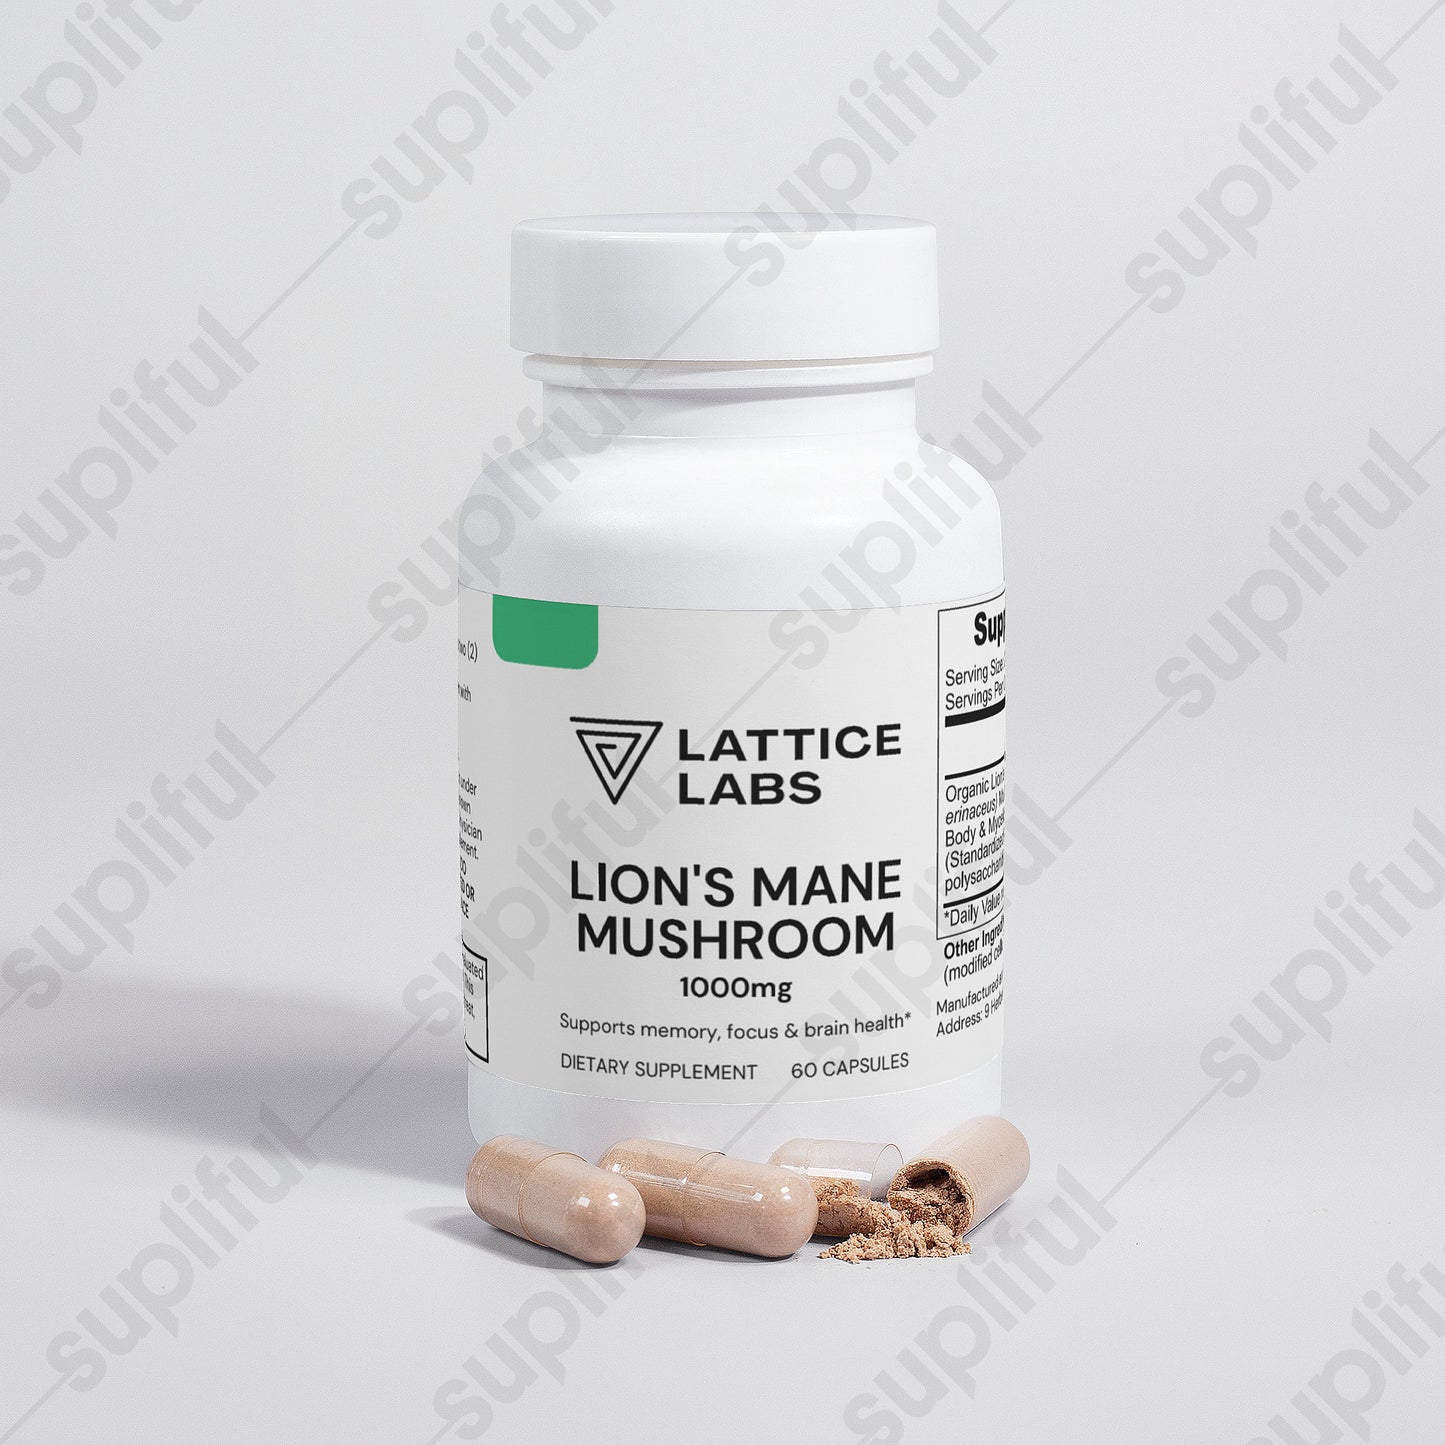 Lattice Labs Lion's Mane Mushroom